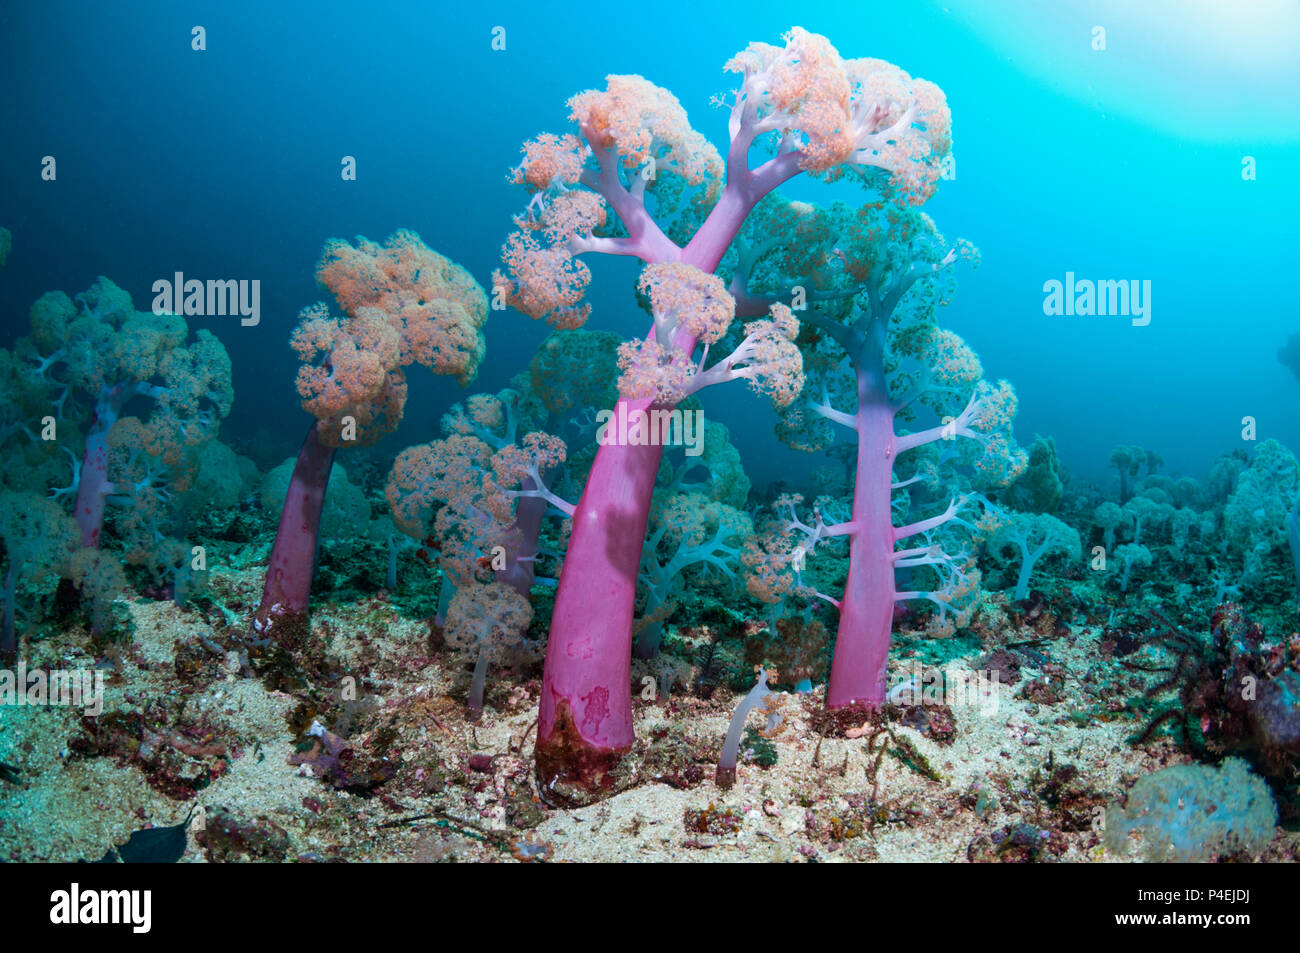 Coral Reef Landschaft mit Weichkorallen [Dendronephthya sp.]. West Papua, Neuguinea. Stockfoto